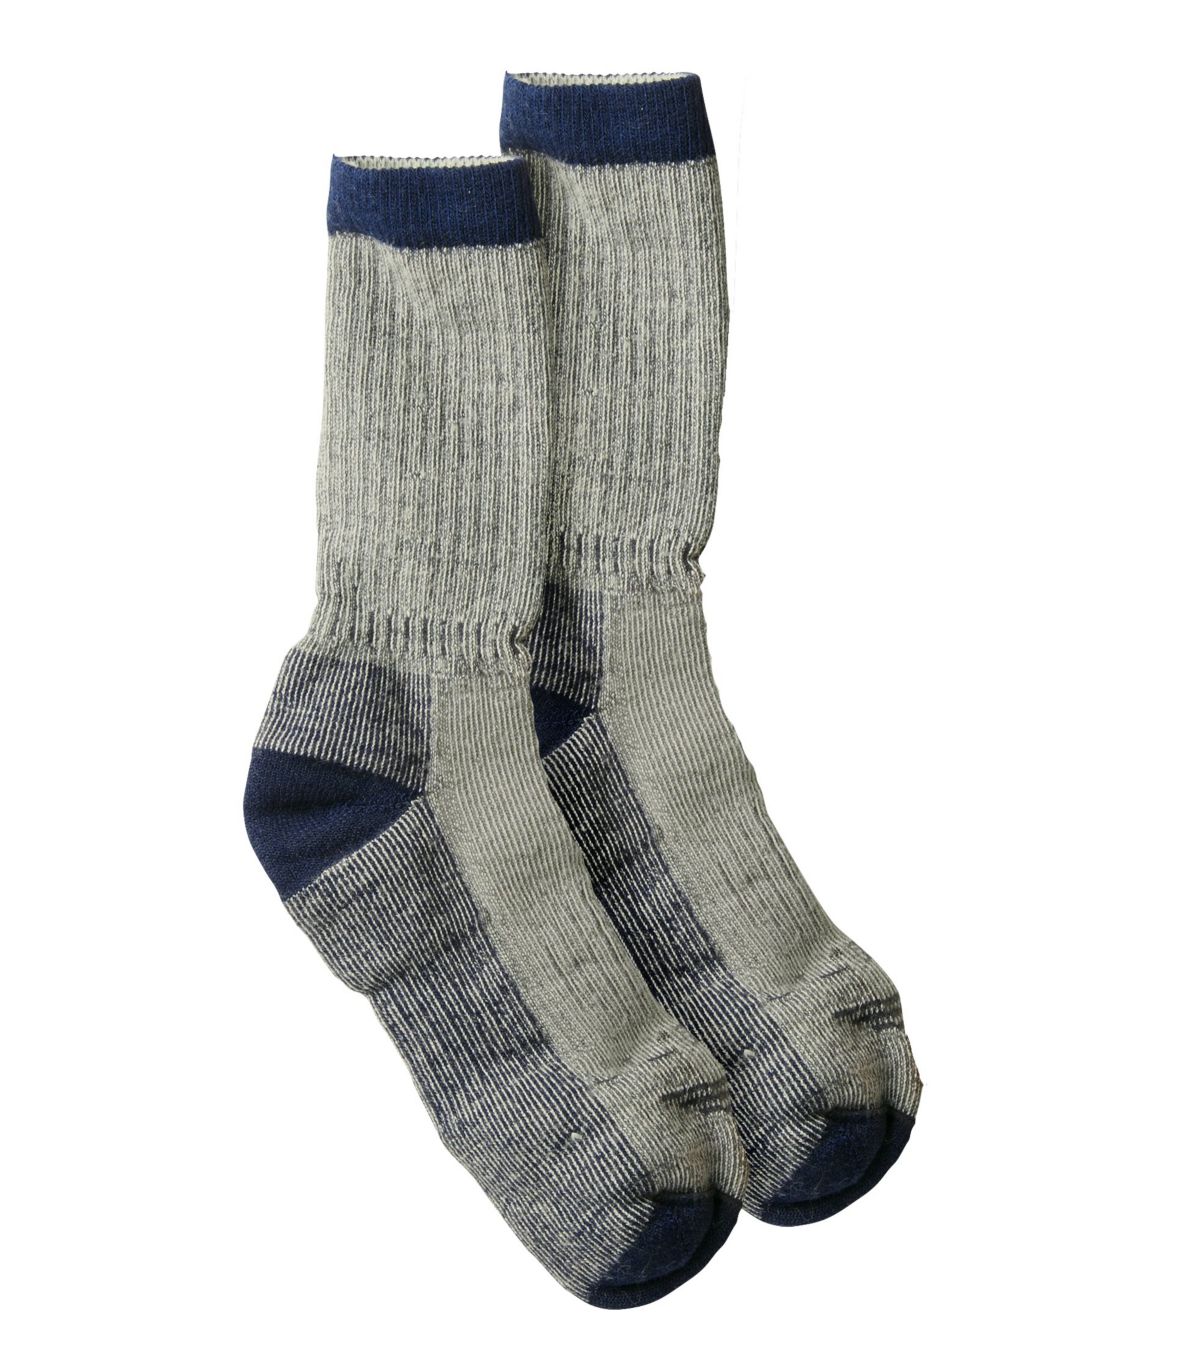 Men's Midweight Wool Cresta Hiking Socks, 1 Pair